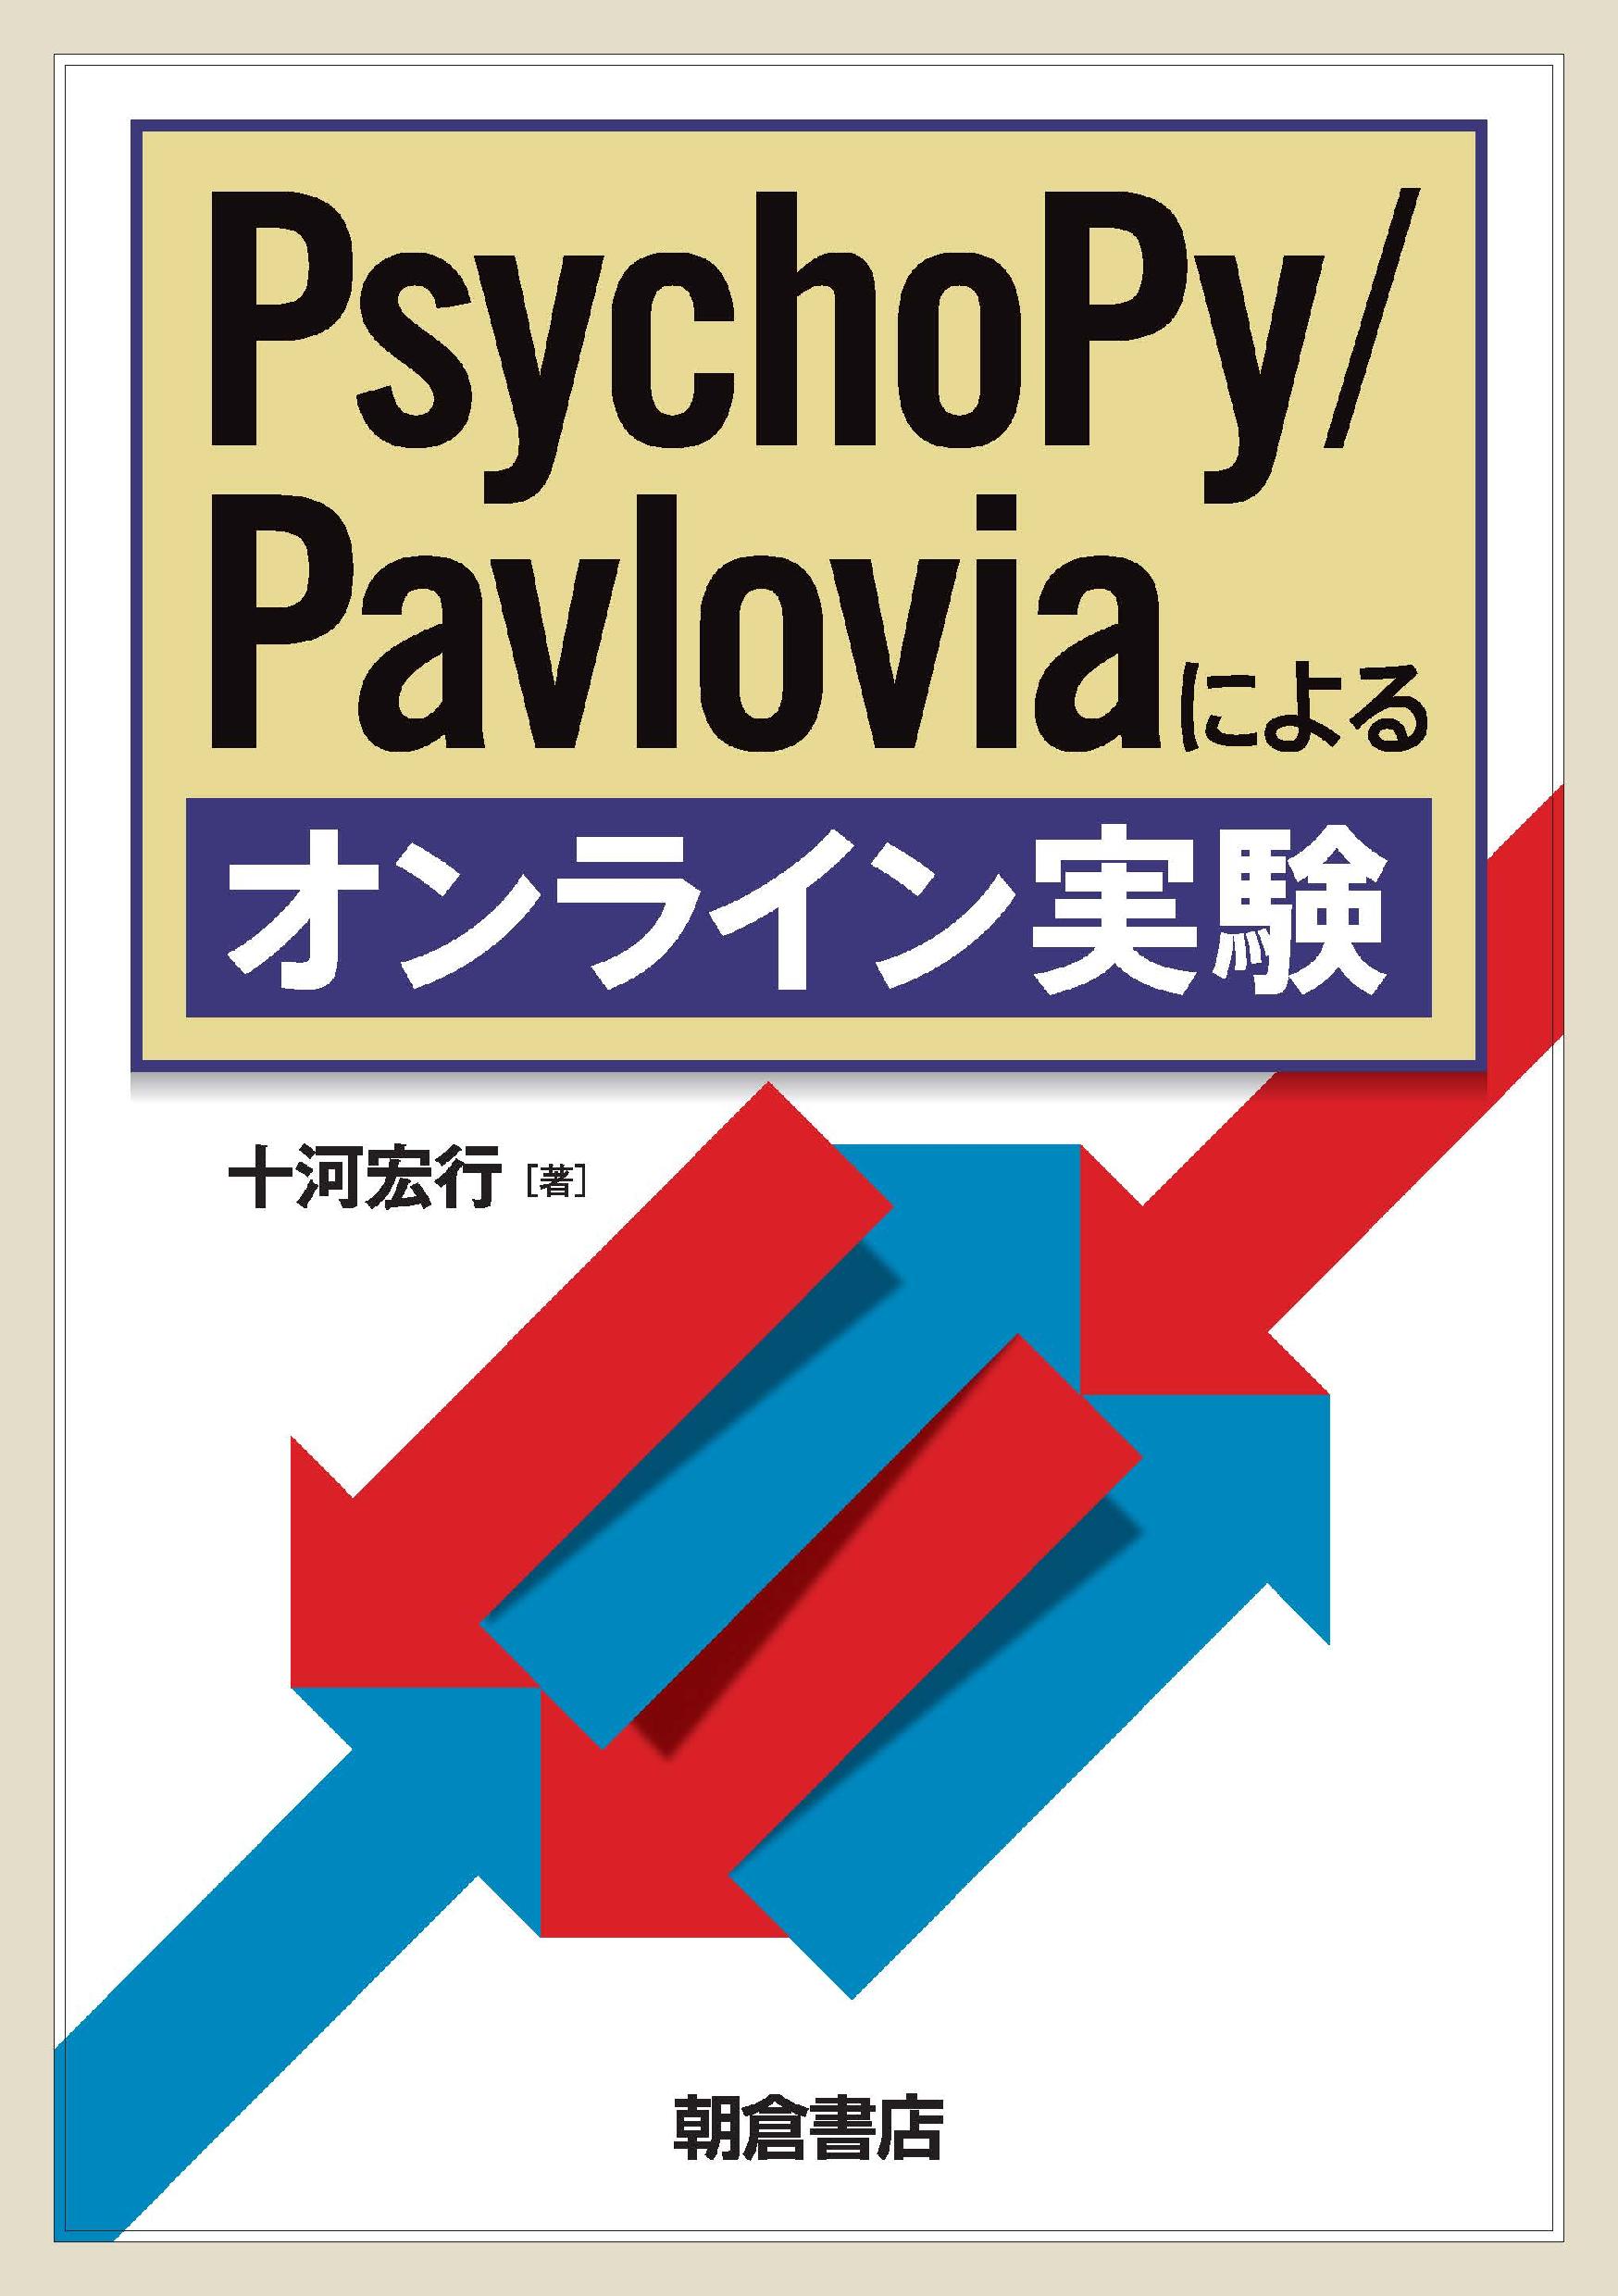 : PsychoPy/Pavloviaによるオンライン実験 